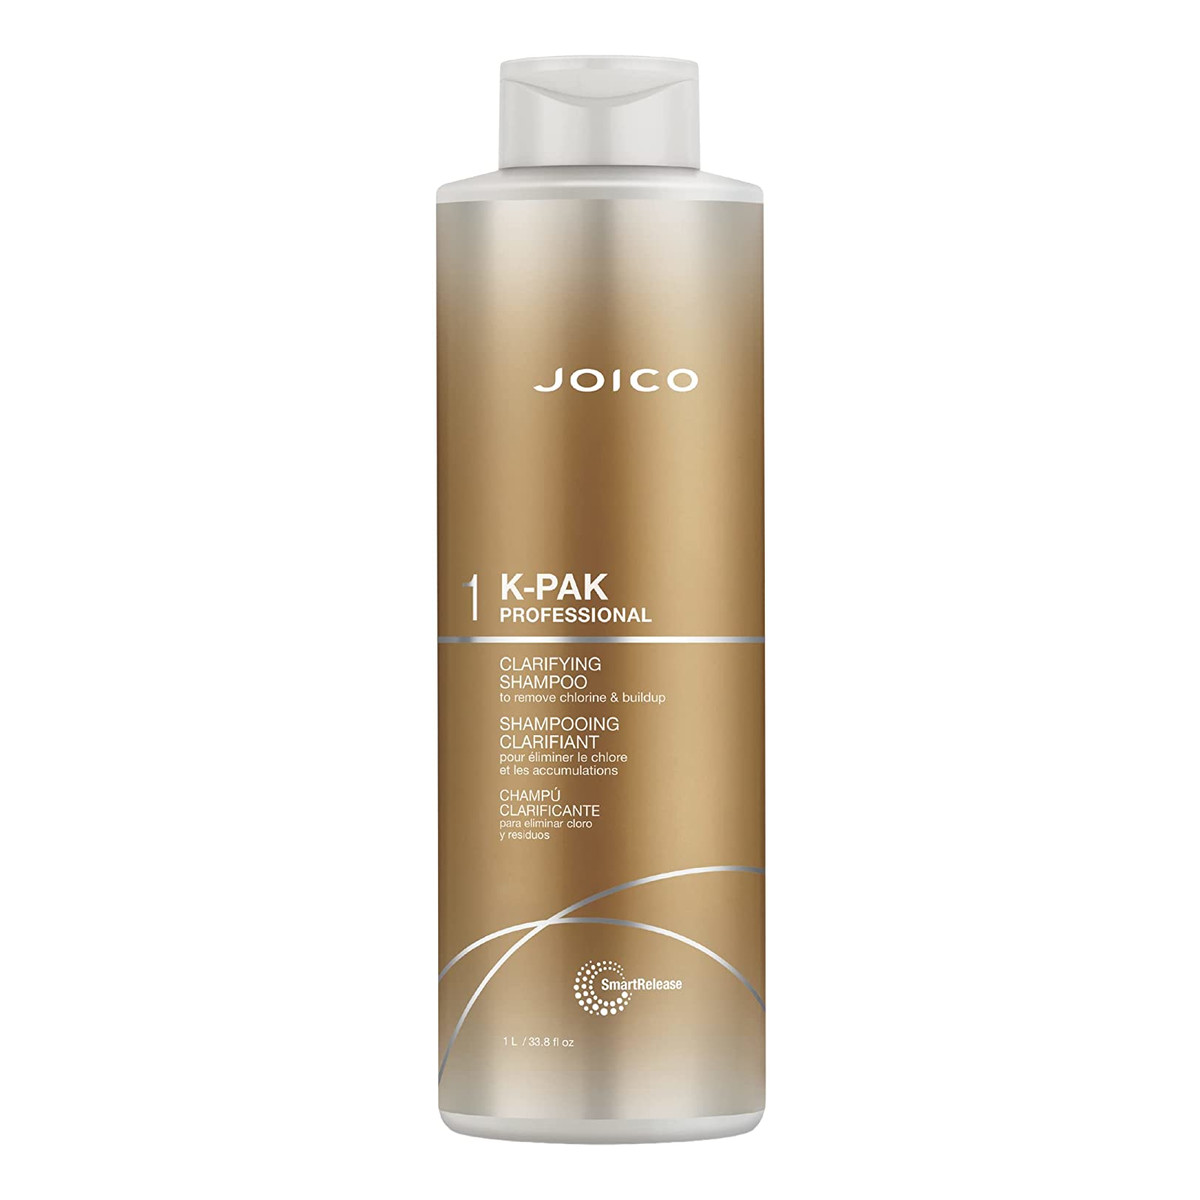 Joico K-pak shampoo clarifying szampon oczyszczający 1000ml